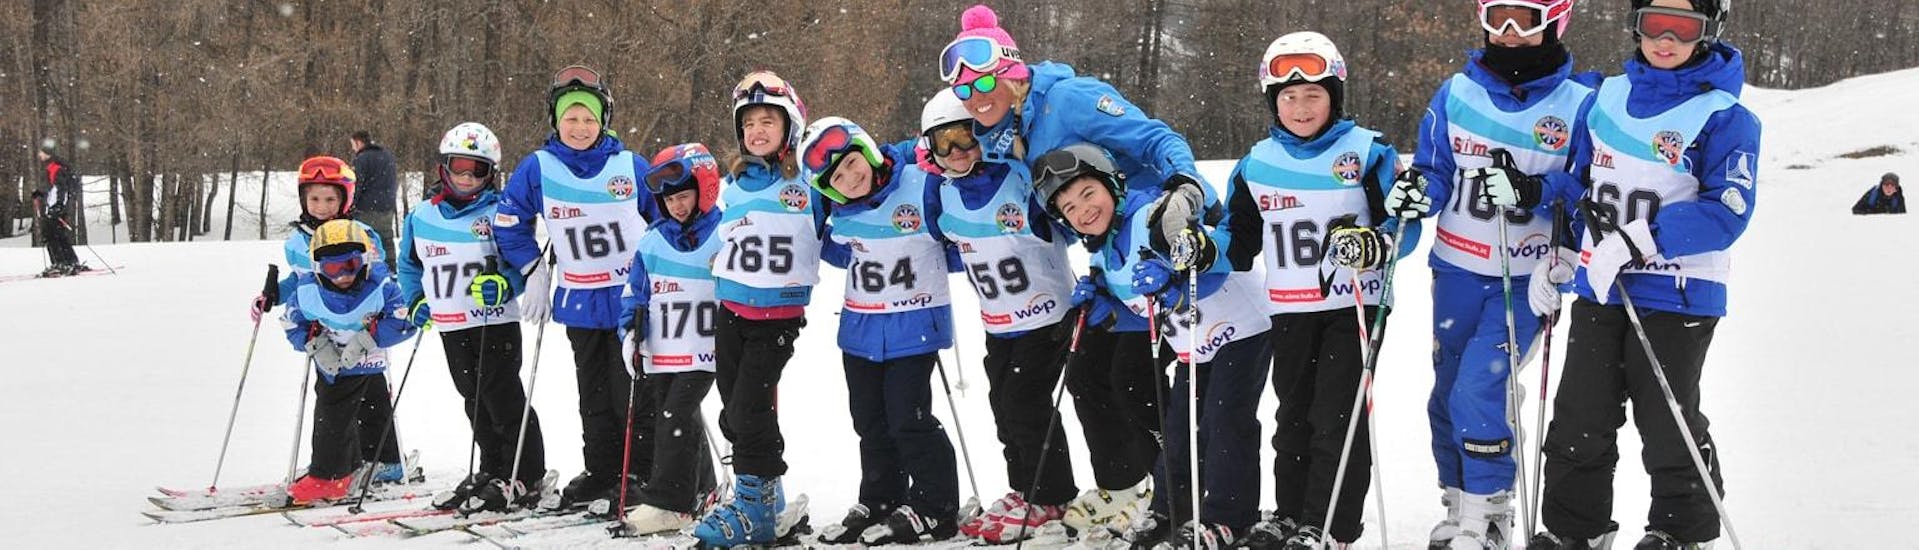 Clases de esquí para niños para avanzados.